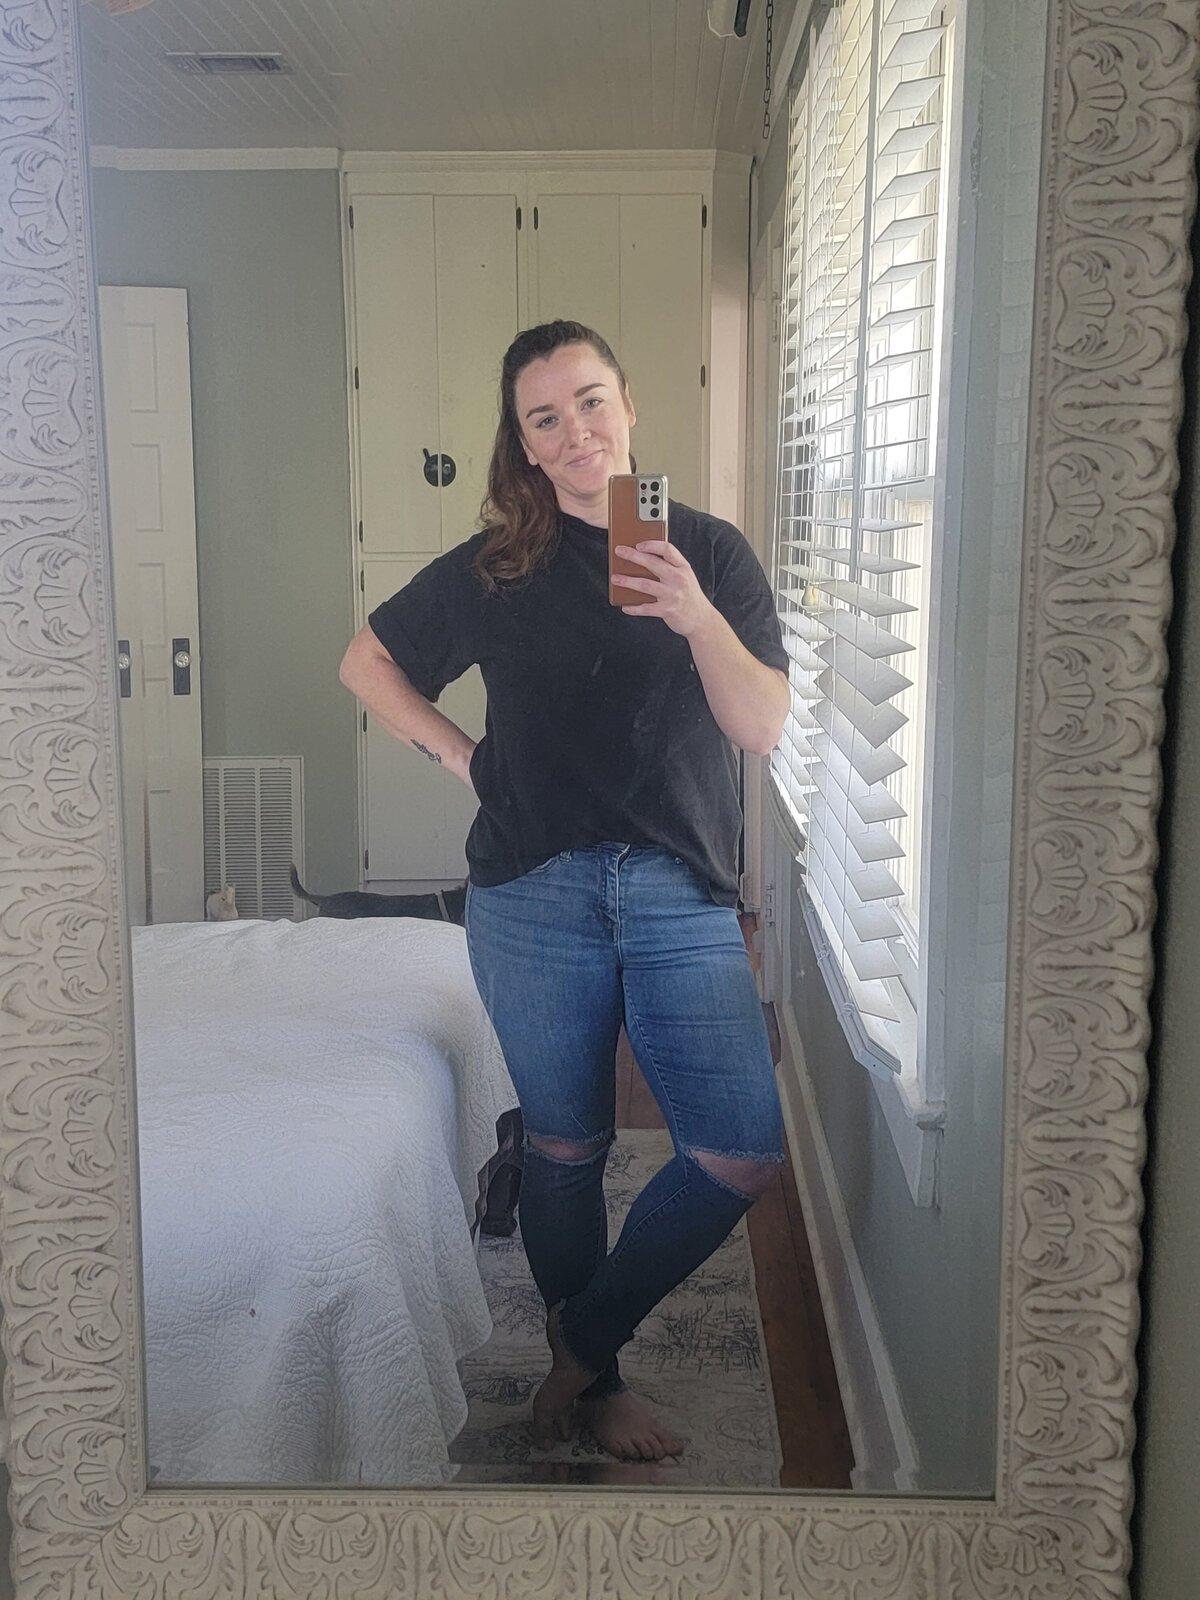 Brittney, posing in bedroom mirror in casual phone selfie